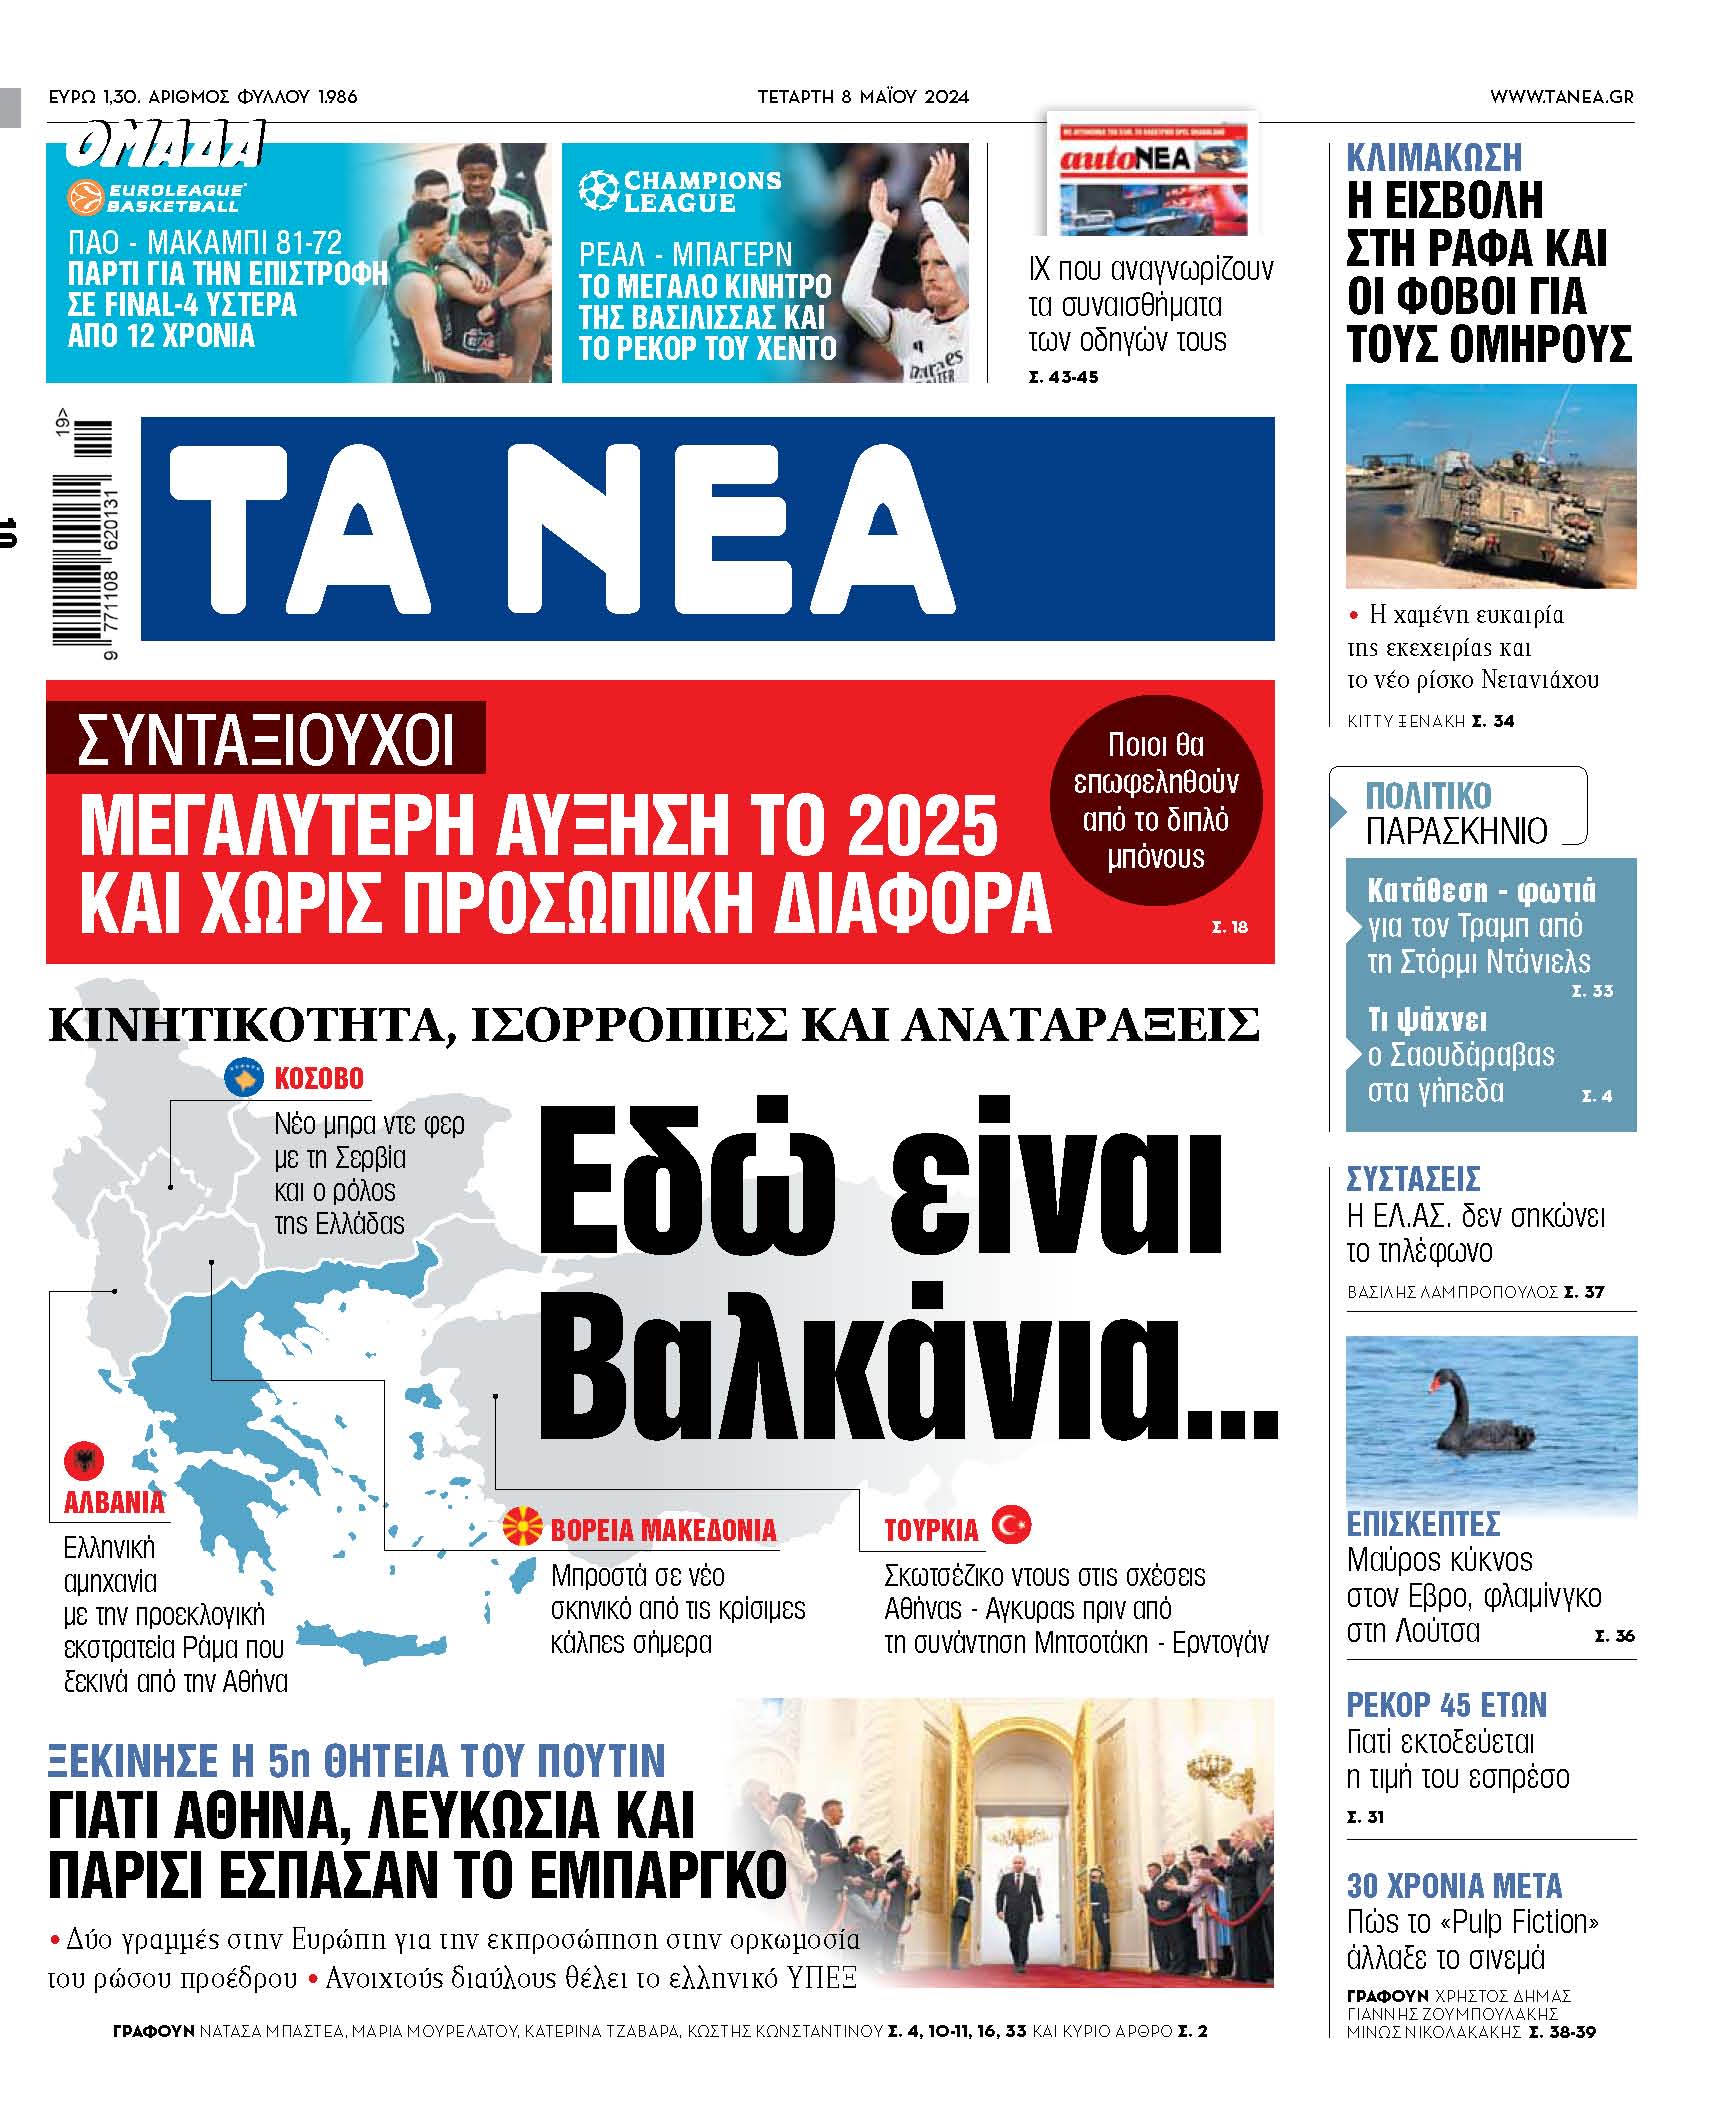 Στα «ΝΕΑ» της Τετάρτης: Εδώ είναι Βαλκάνια...